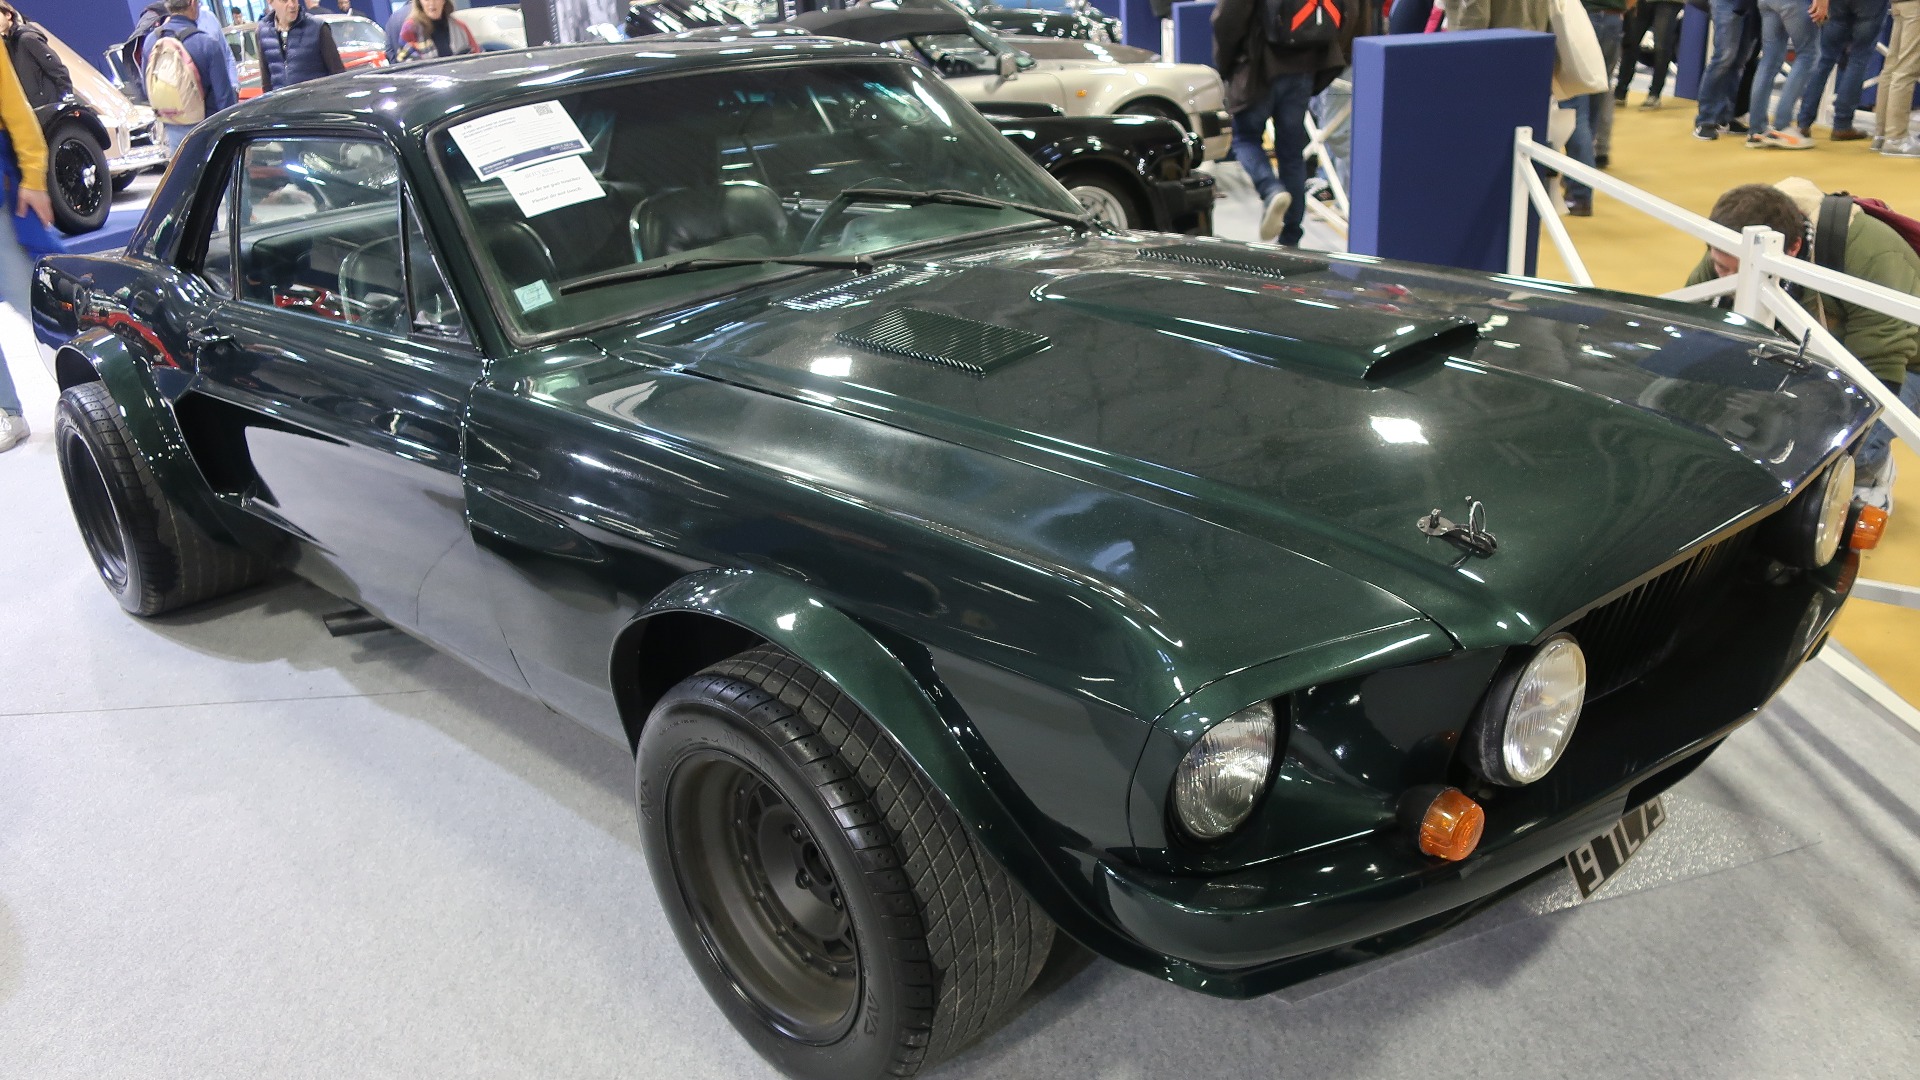 Dette er utvilsomt den mest berømte Ford Mustang i fransk historie, siden det er Mustangen frankrikes actionstjerne nummer 1 på 70-tallet: Jean-Paul Belmondo, kjørte i filmen «Le Marginal». 